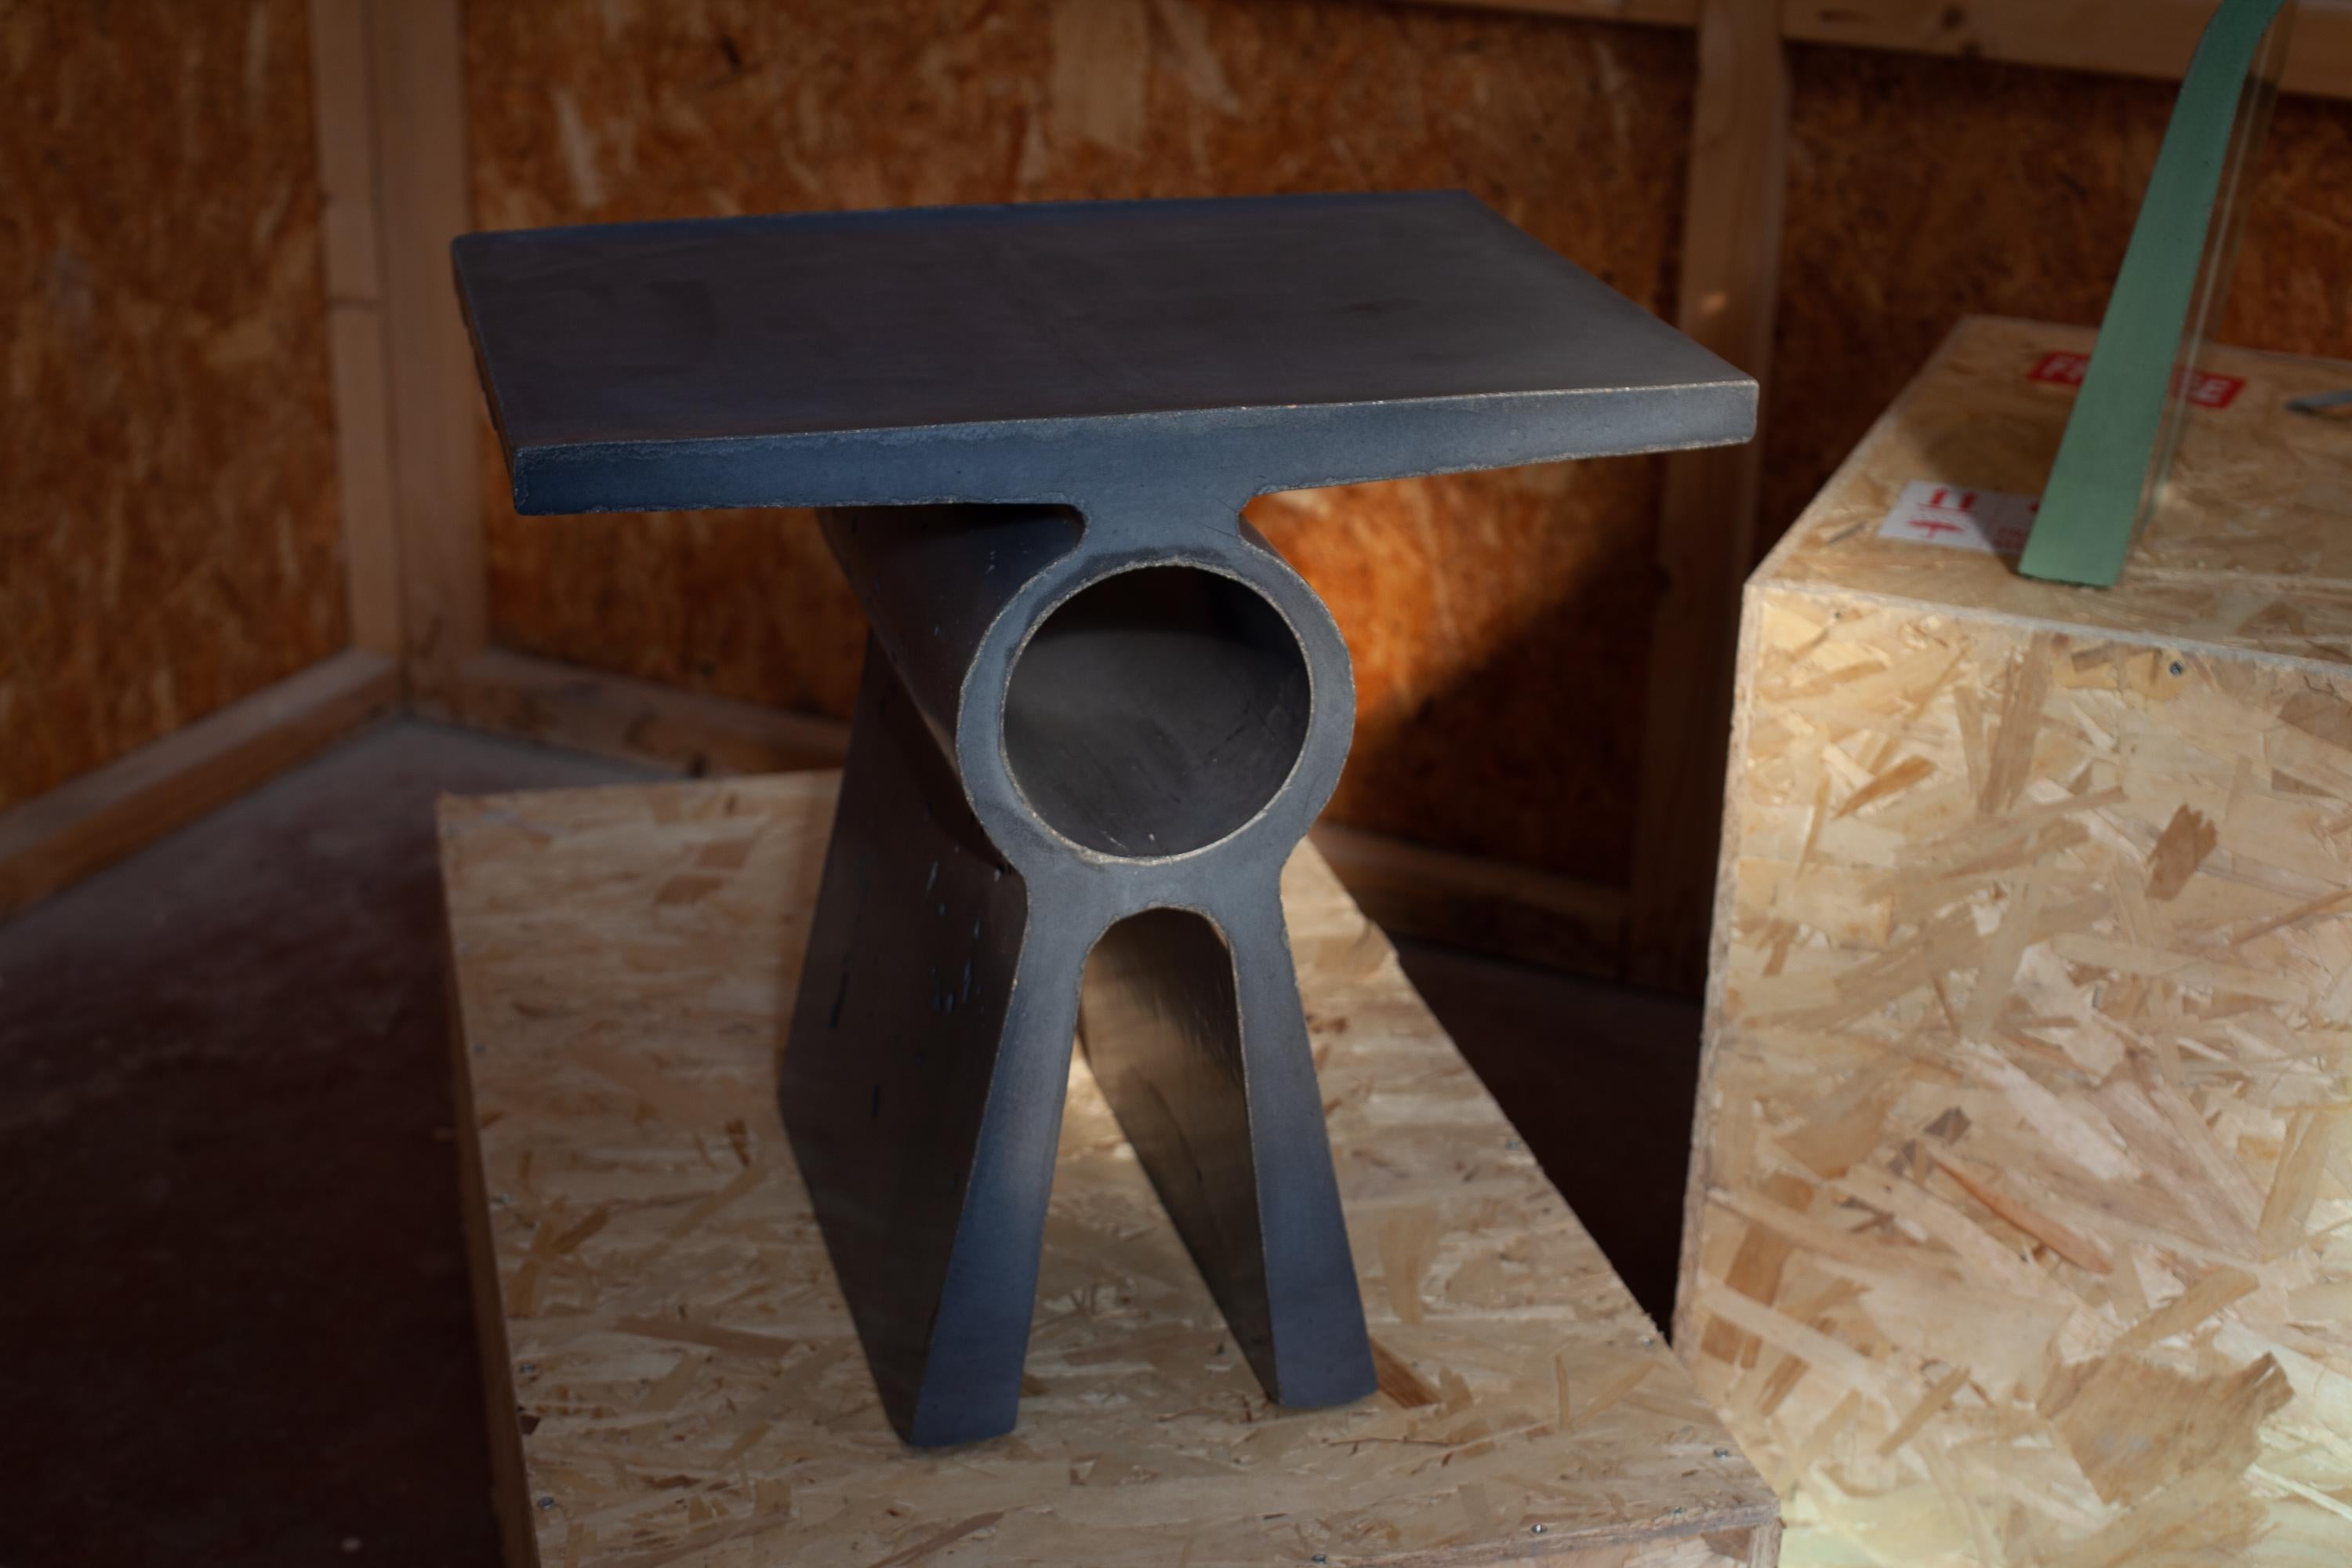 La table basse B fait partie de la Collection Abecedario et marque le début d'un langage en ciment qui créera un alphabet en béton composé de tables et de tabourets coulés à travers une coulée de béton à l'intérieur d'un moule extrudé. 
Les produits